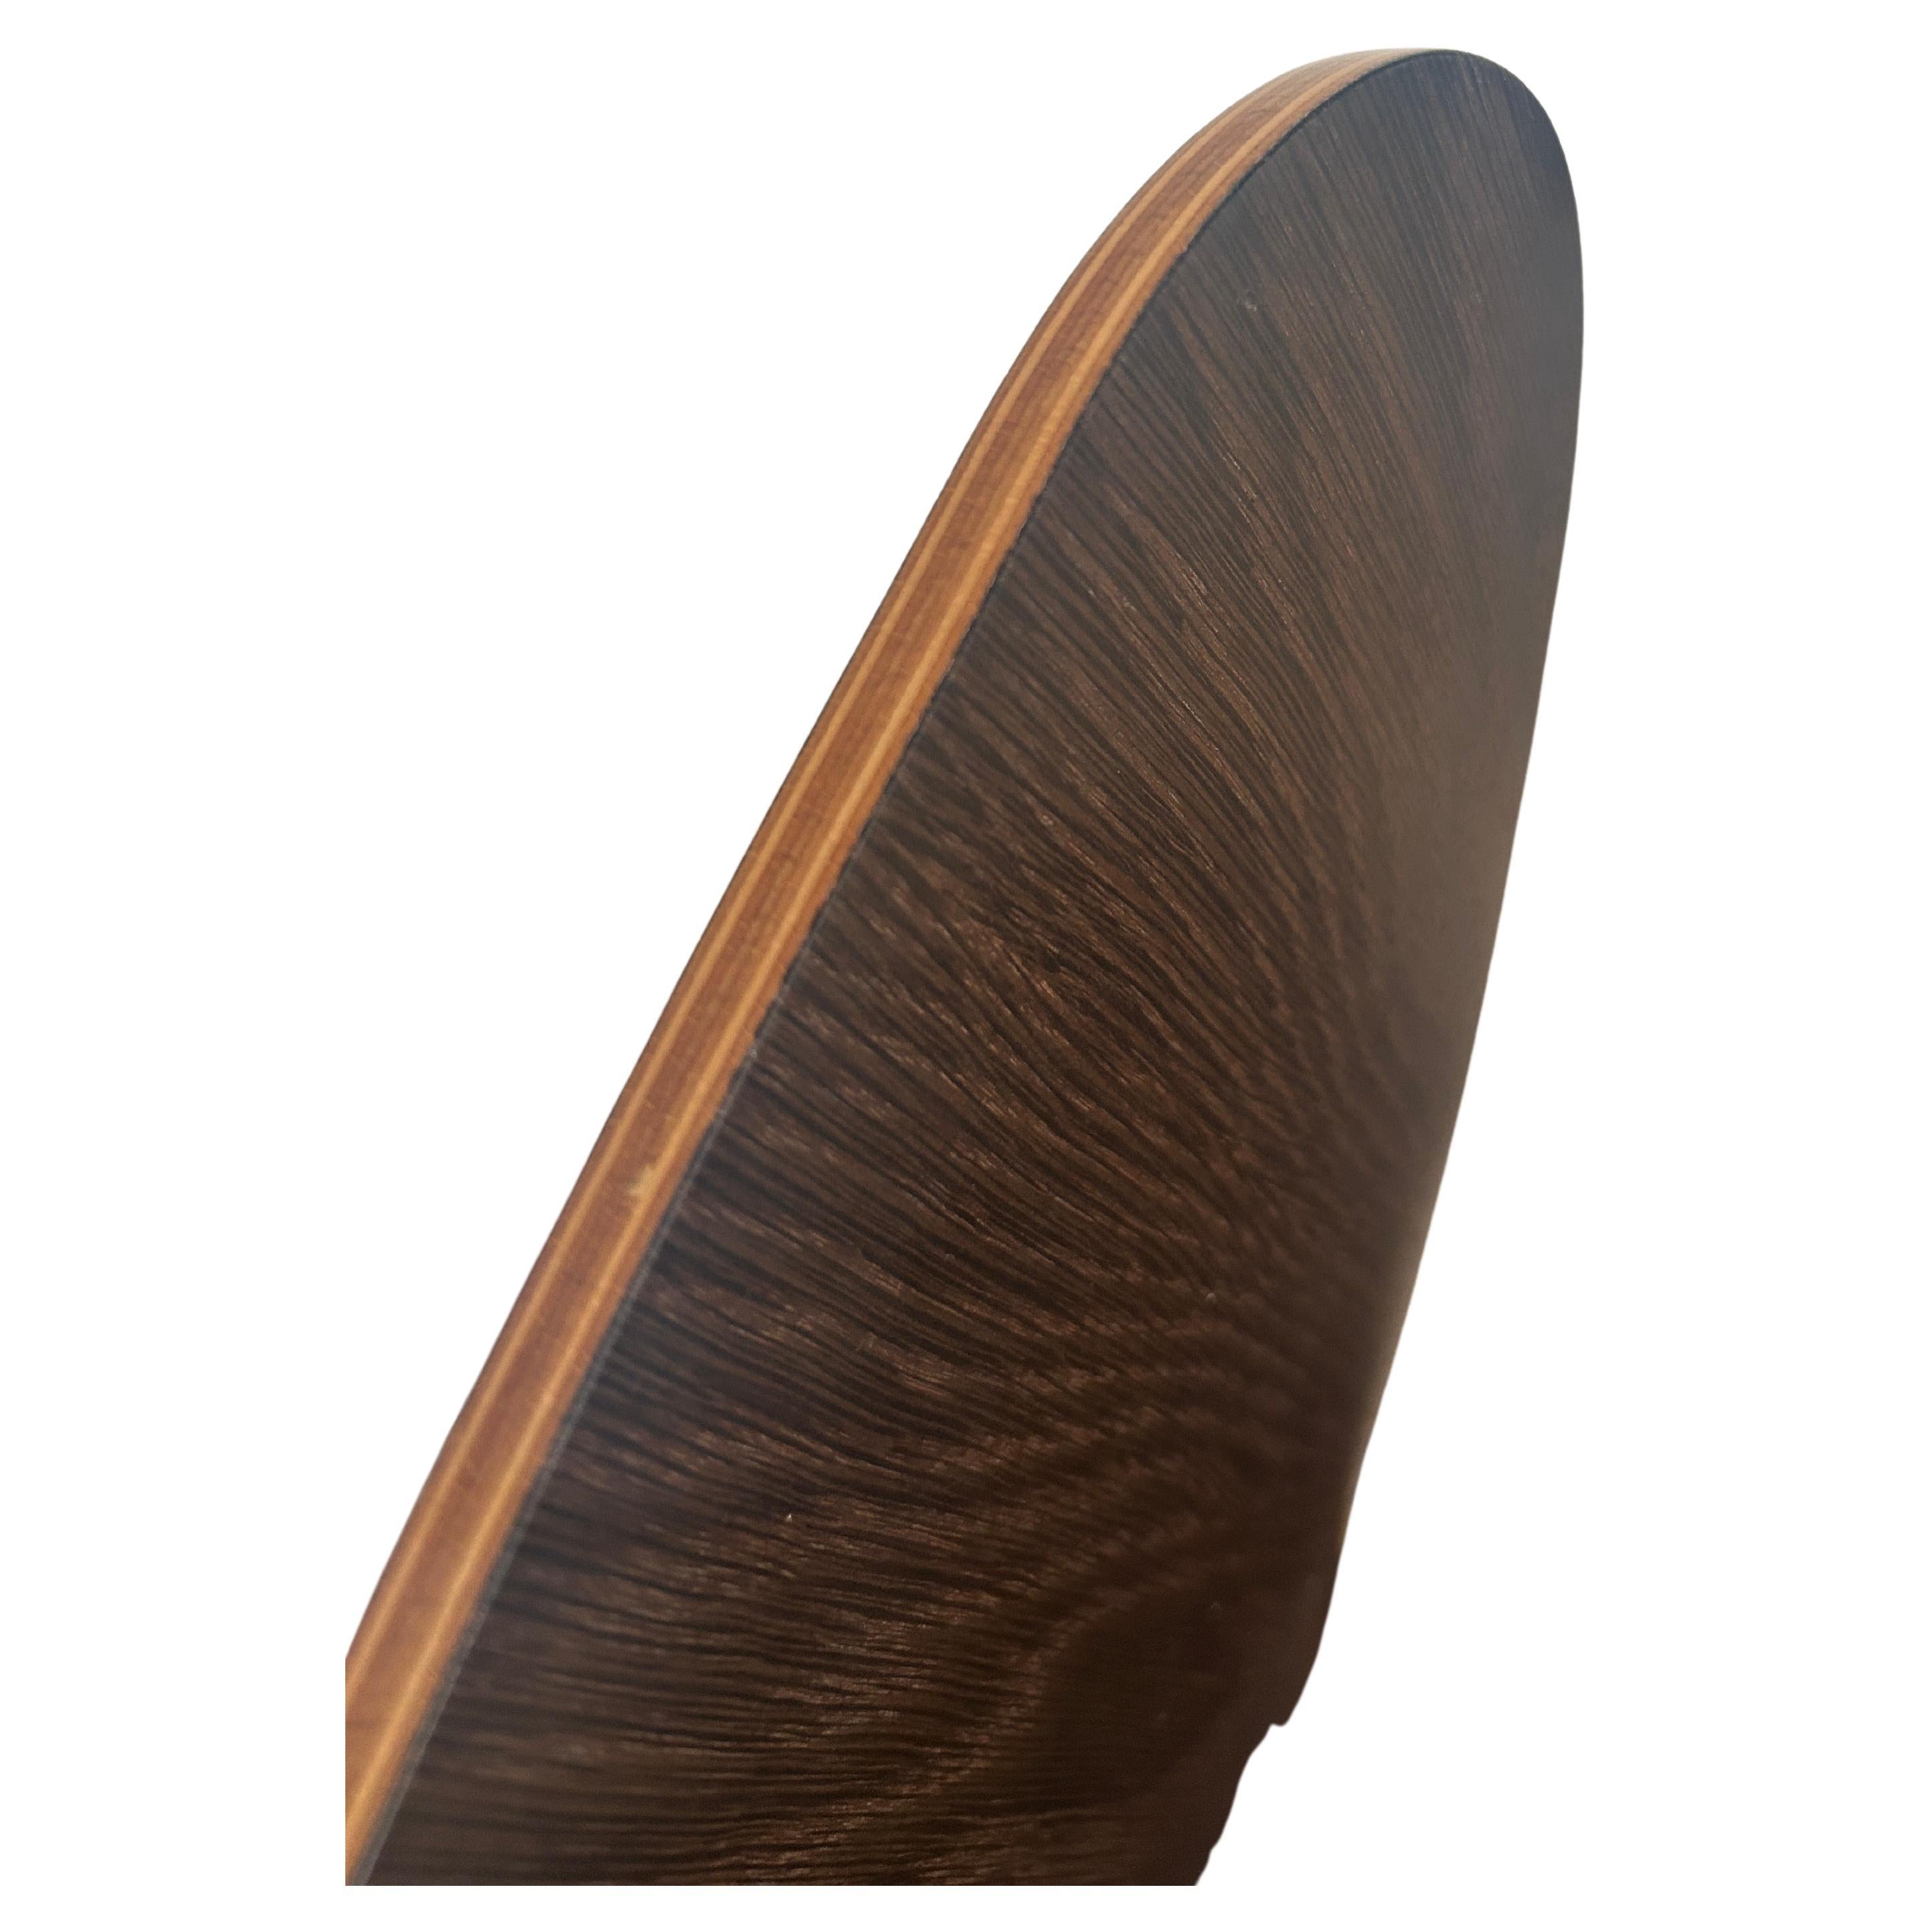 Contemporary Arne Jacobsen for Fritz Hansen Dark Brown Oak Series 7 Desk Task Office Chair For Sale